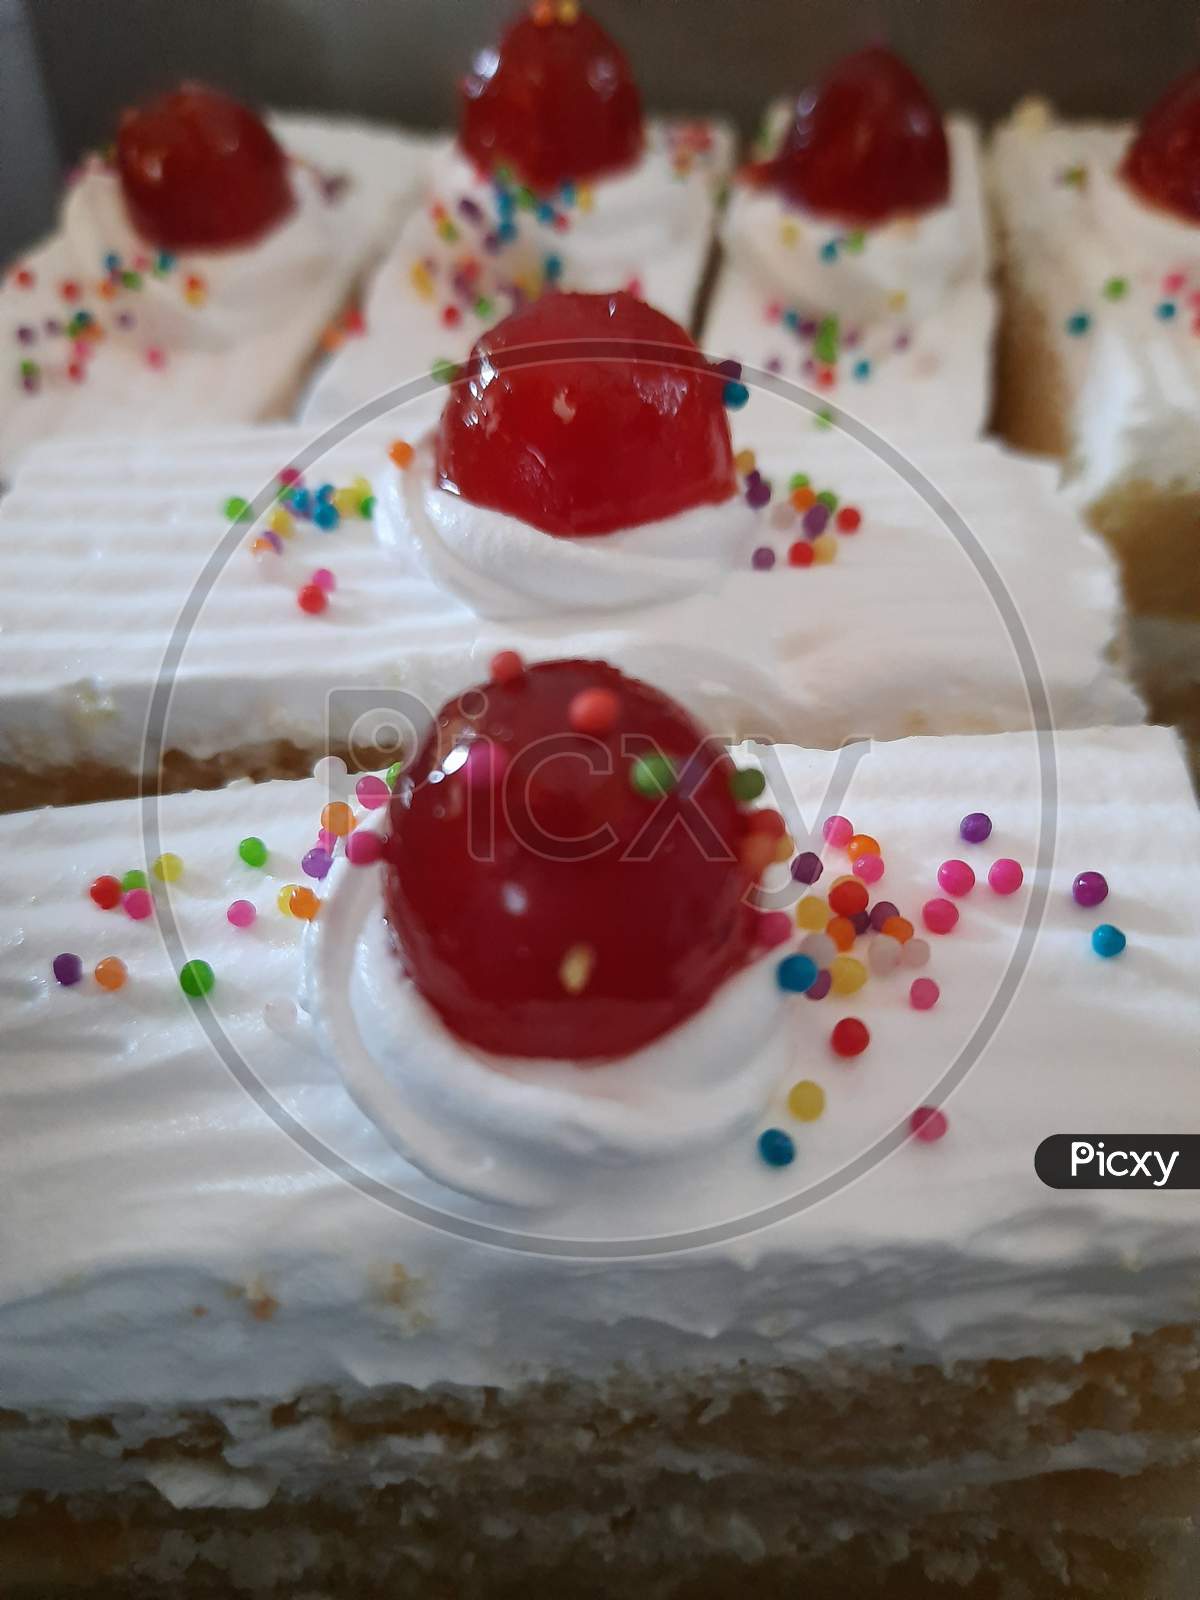 Delicious cream cake with cherries